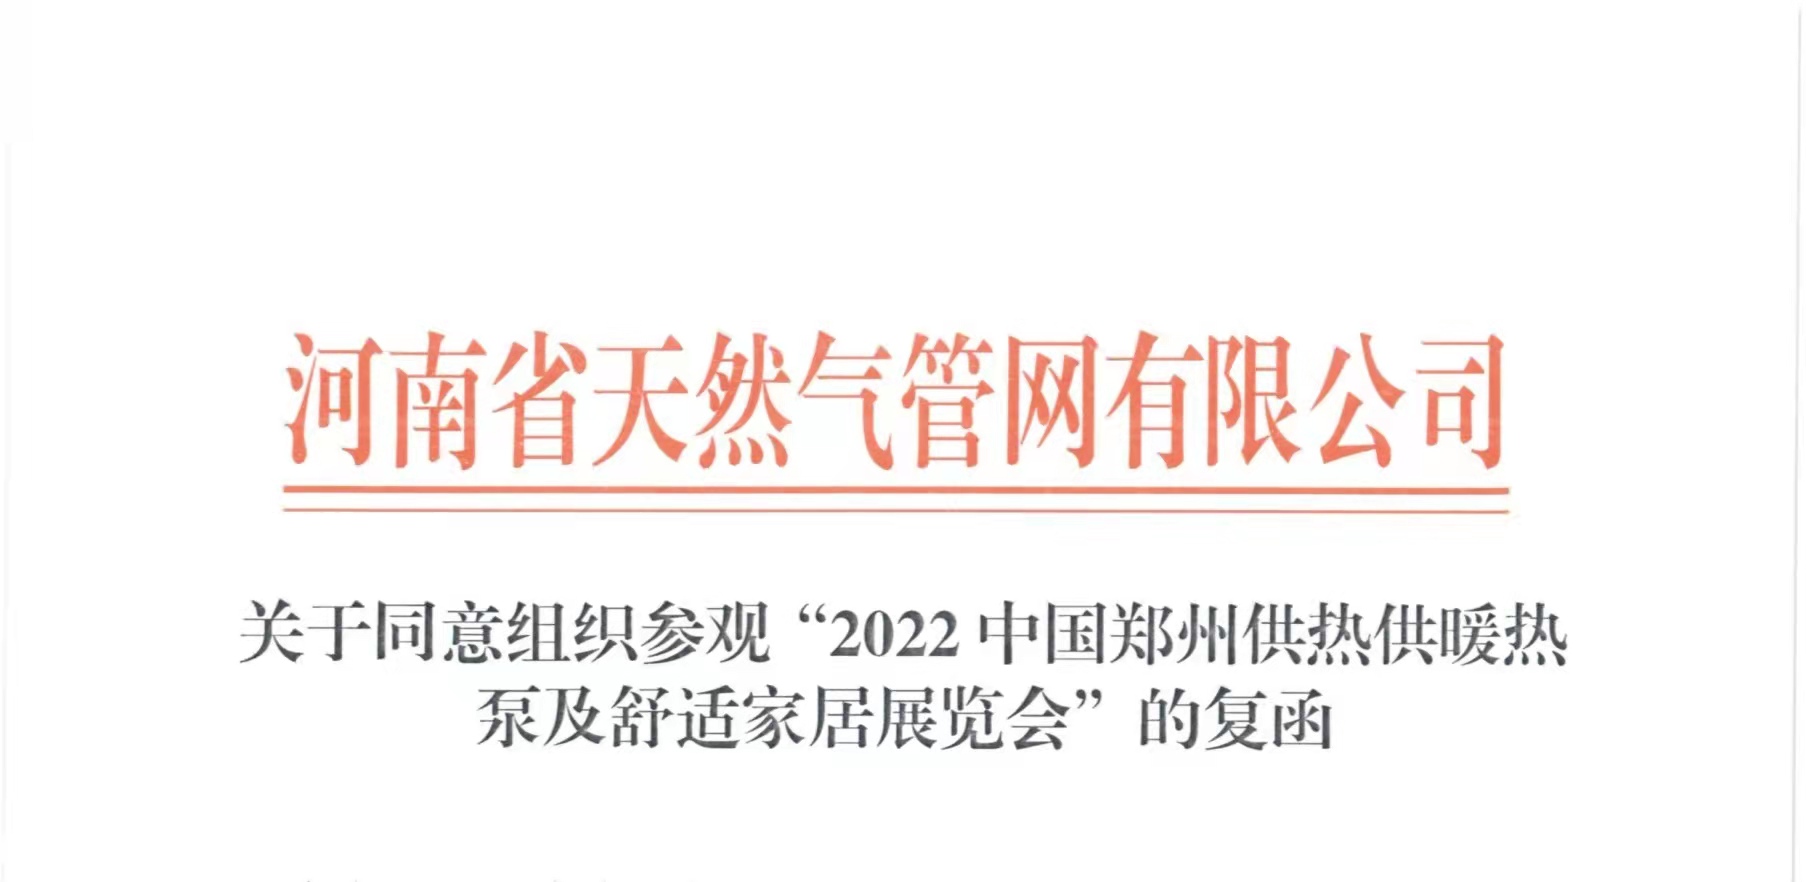 重磅消息丨河南省天然气管网有限公司及其子公司共同参观“2022郑州供热展”